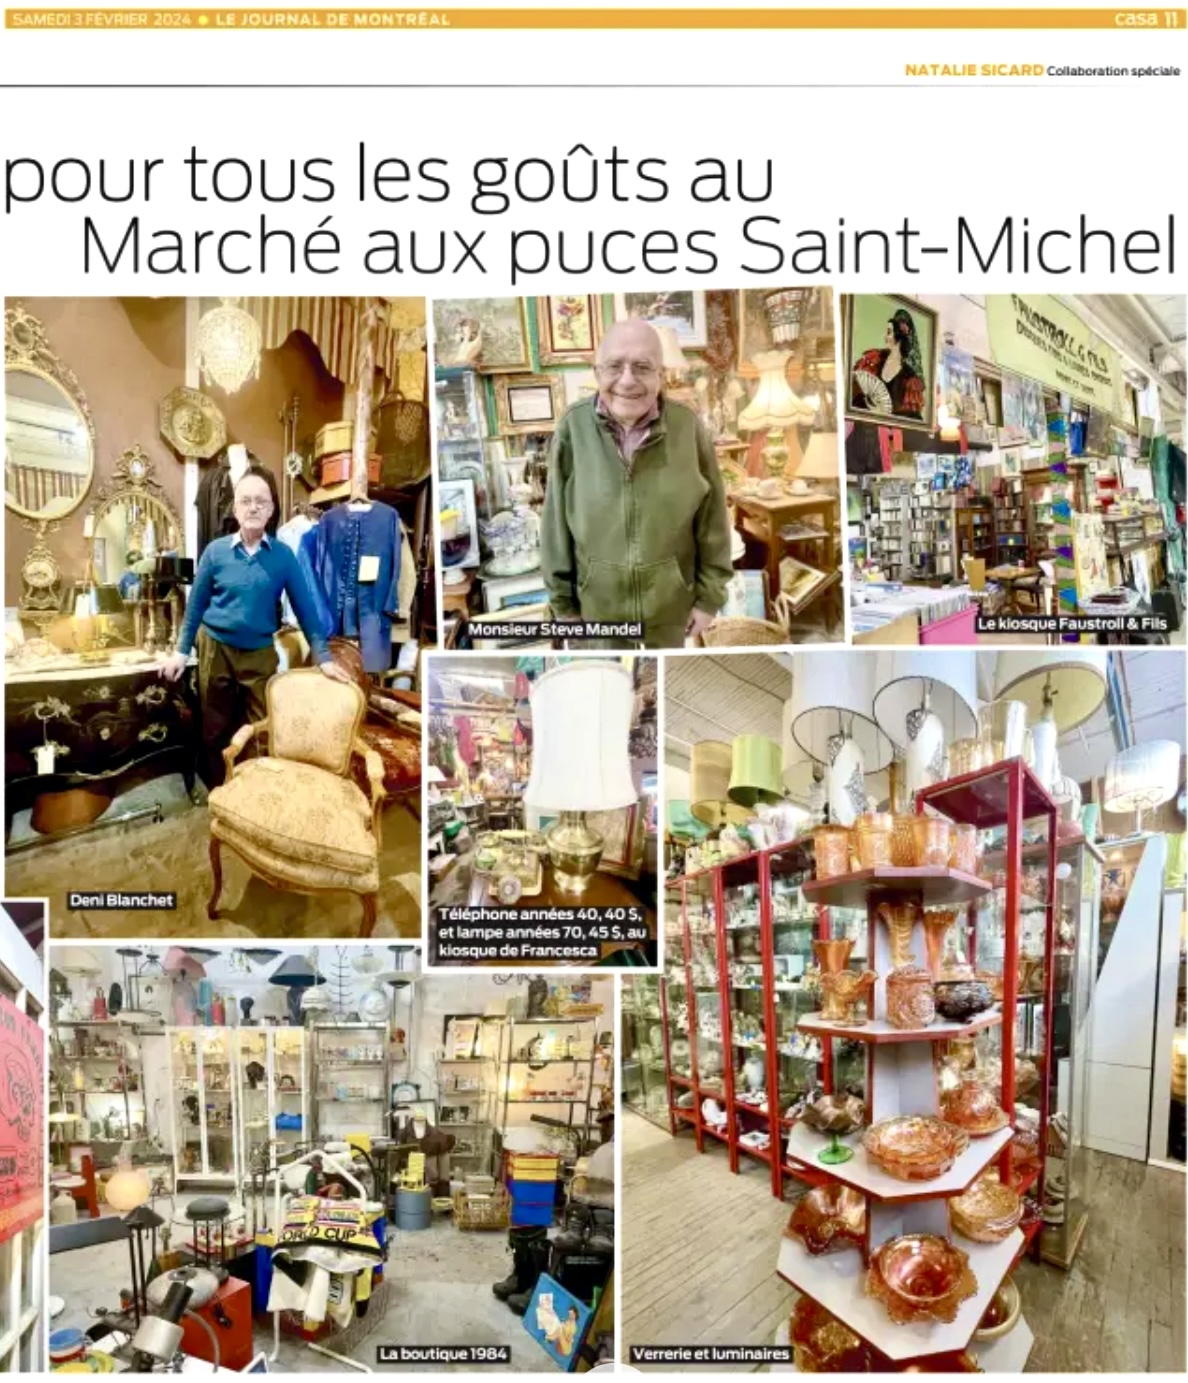 Puces St-Michel 2